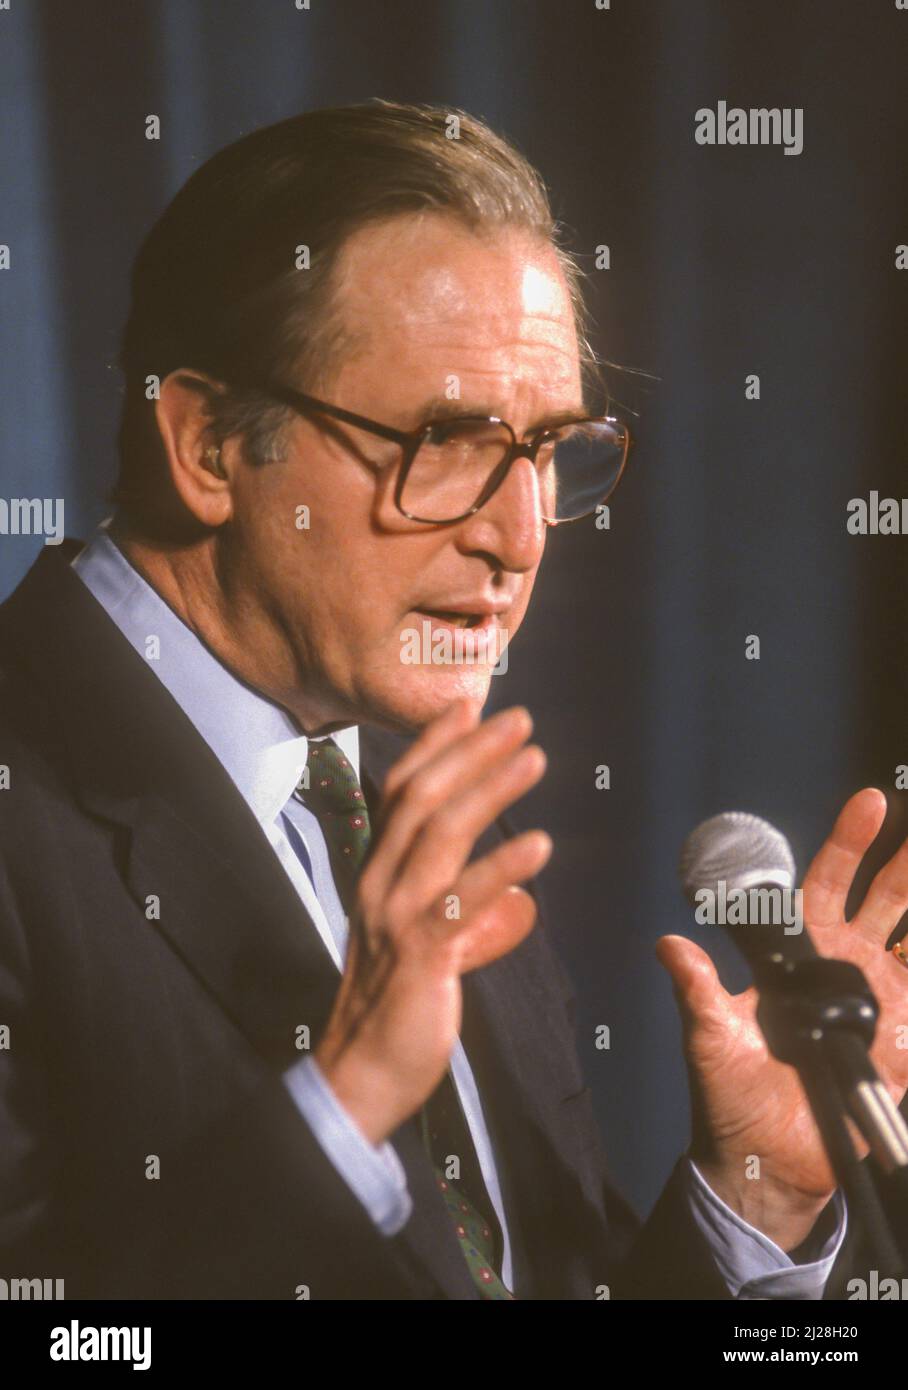 WASHINGTON, DC, EE.UU. - El Senador Jay Rockefeller (D-WV) de EE.UU. Habló durante la reunión de la Asociación Médica Americana, marzo de 1993. Foto de stock